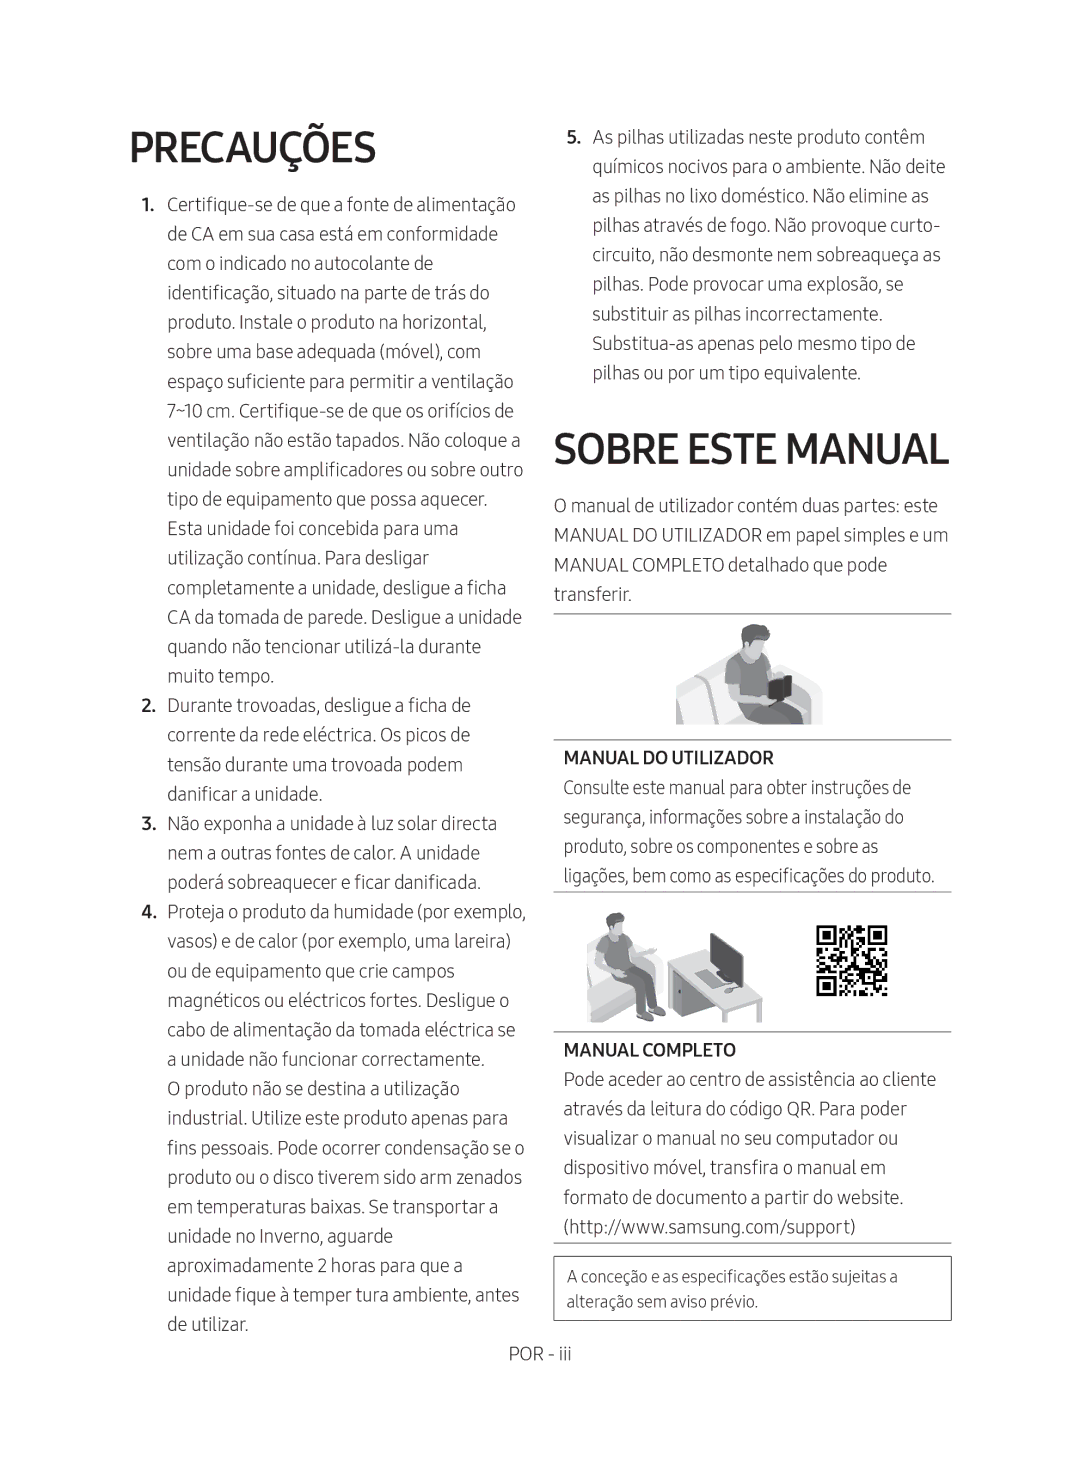 Samsung HW-M4501/ZF manual Precauções, Sobre Este Manual 